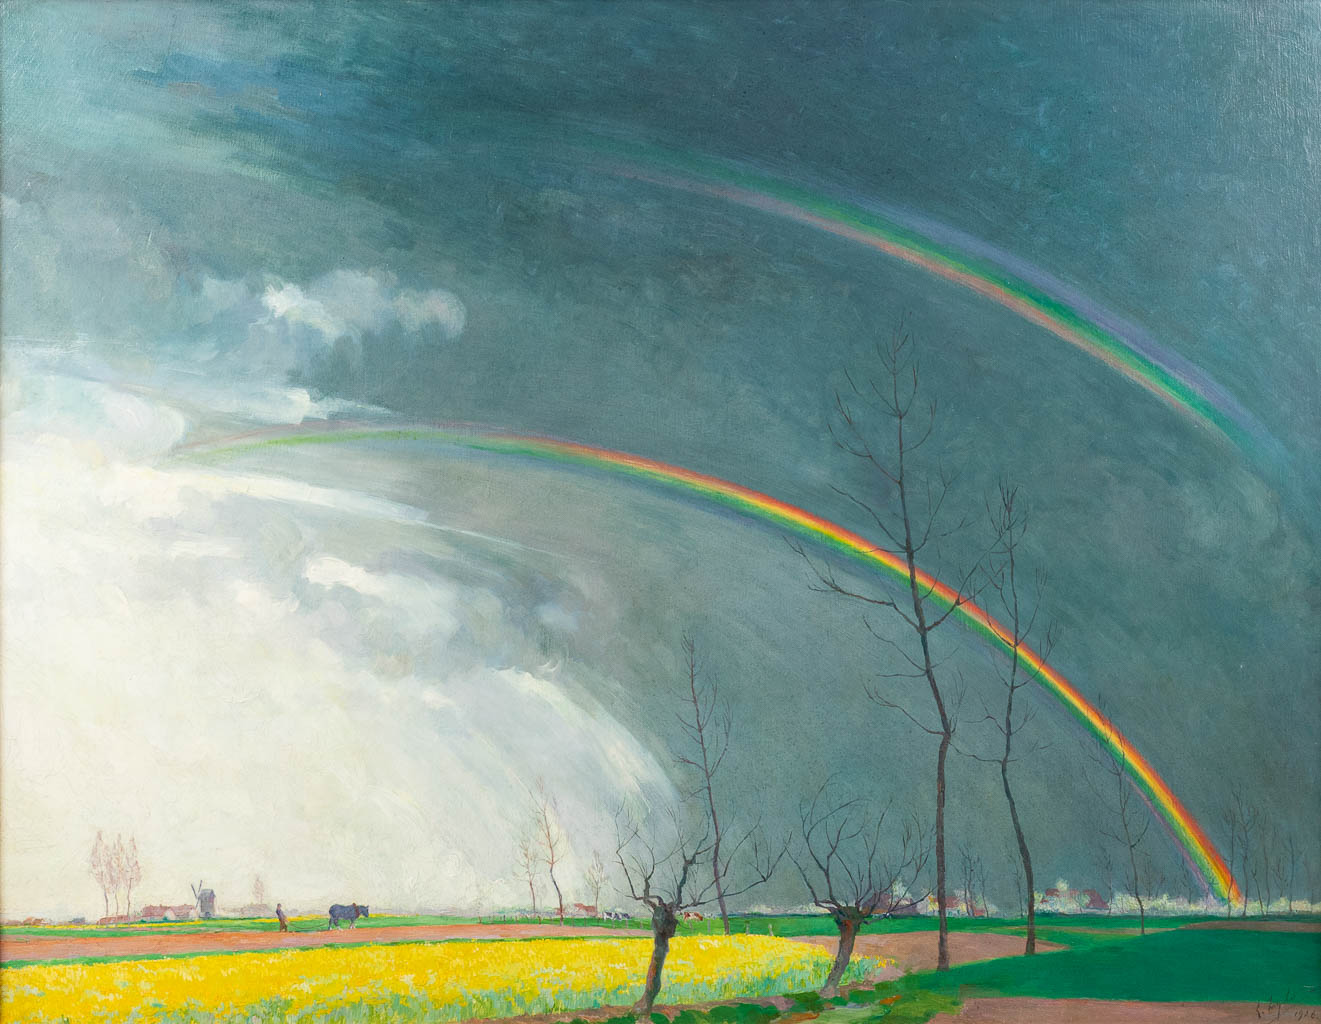 Léo ENGELS (1882-1952) 'The Rainbow' oil on canvas. 1926. (W: 104 x H: 80 cm)